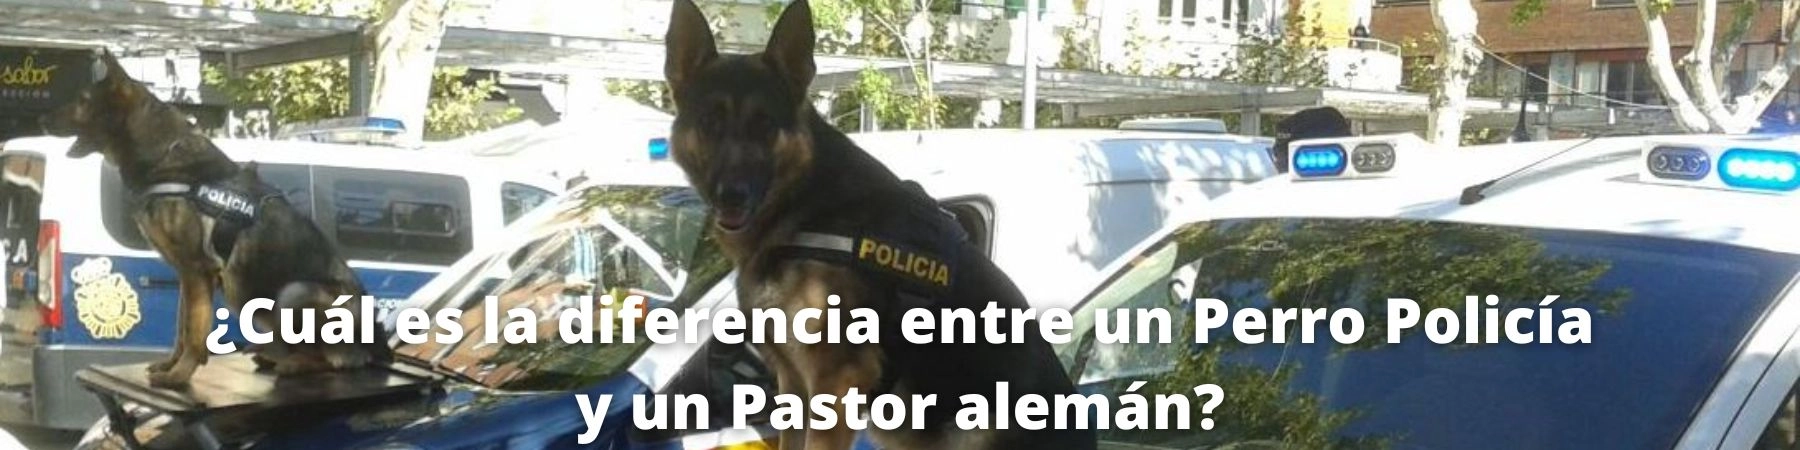 diferencia entre perro policía y pastor alemán